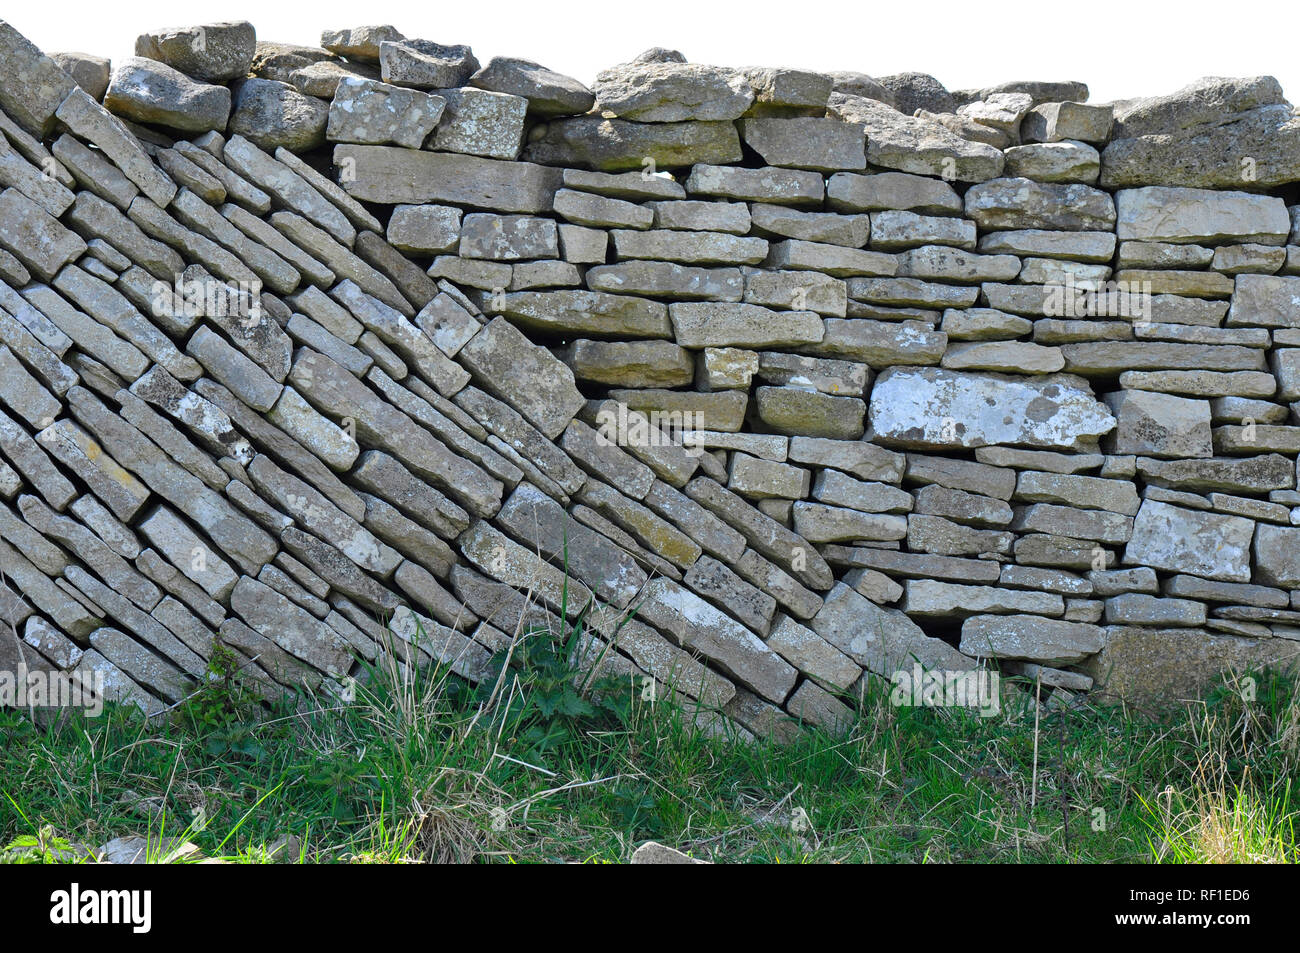 Trockenmauer mit einer Mischung aus Niveau und abfallende Kurse auf der Isle of Purbeck, Dorset. Grobe Kalkstein Mauer trennt die Felder an der Küste. Stockfoto